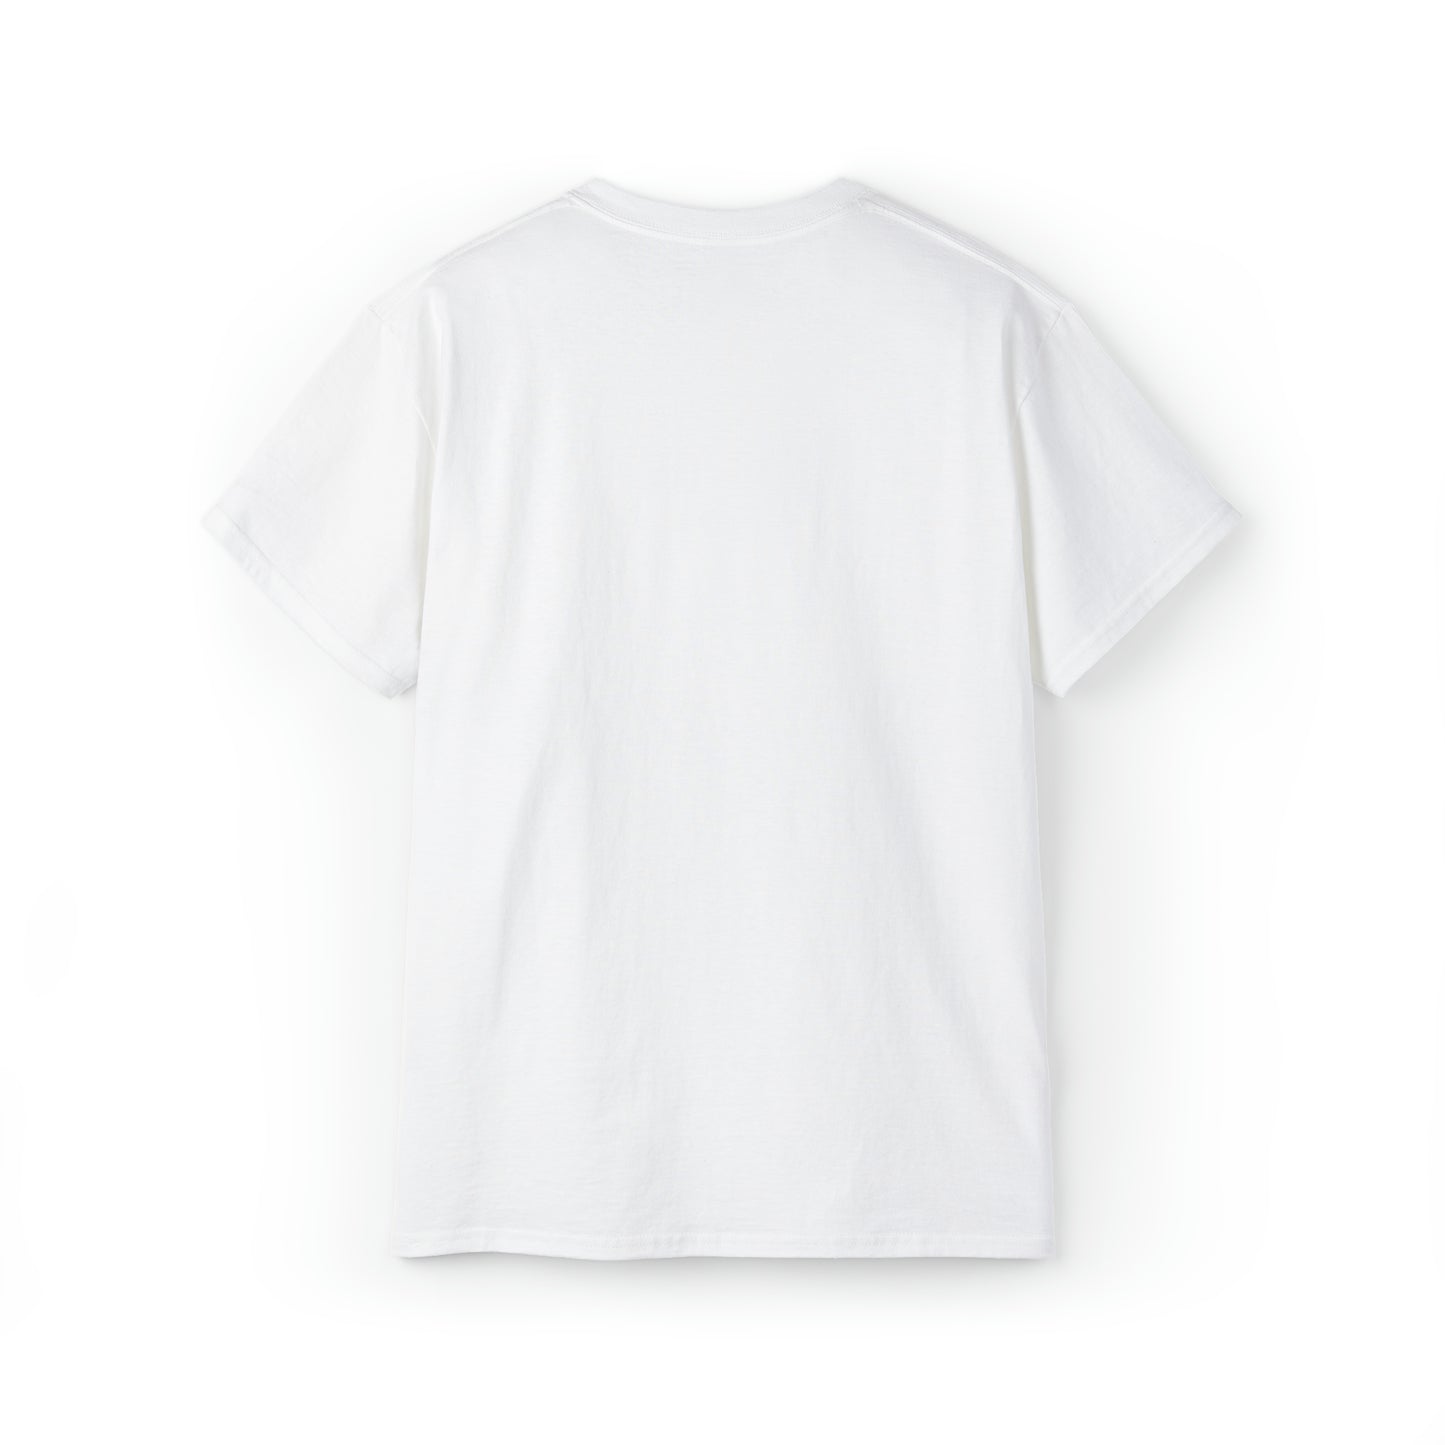 BUFU T-shirt Unisex